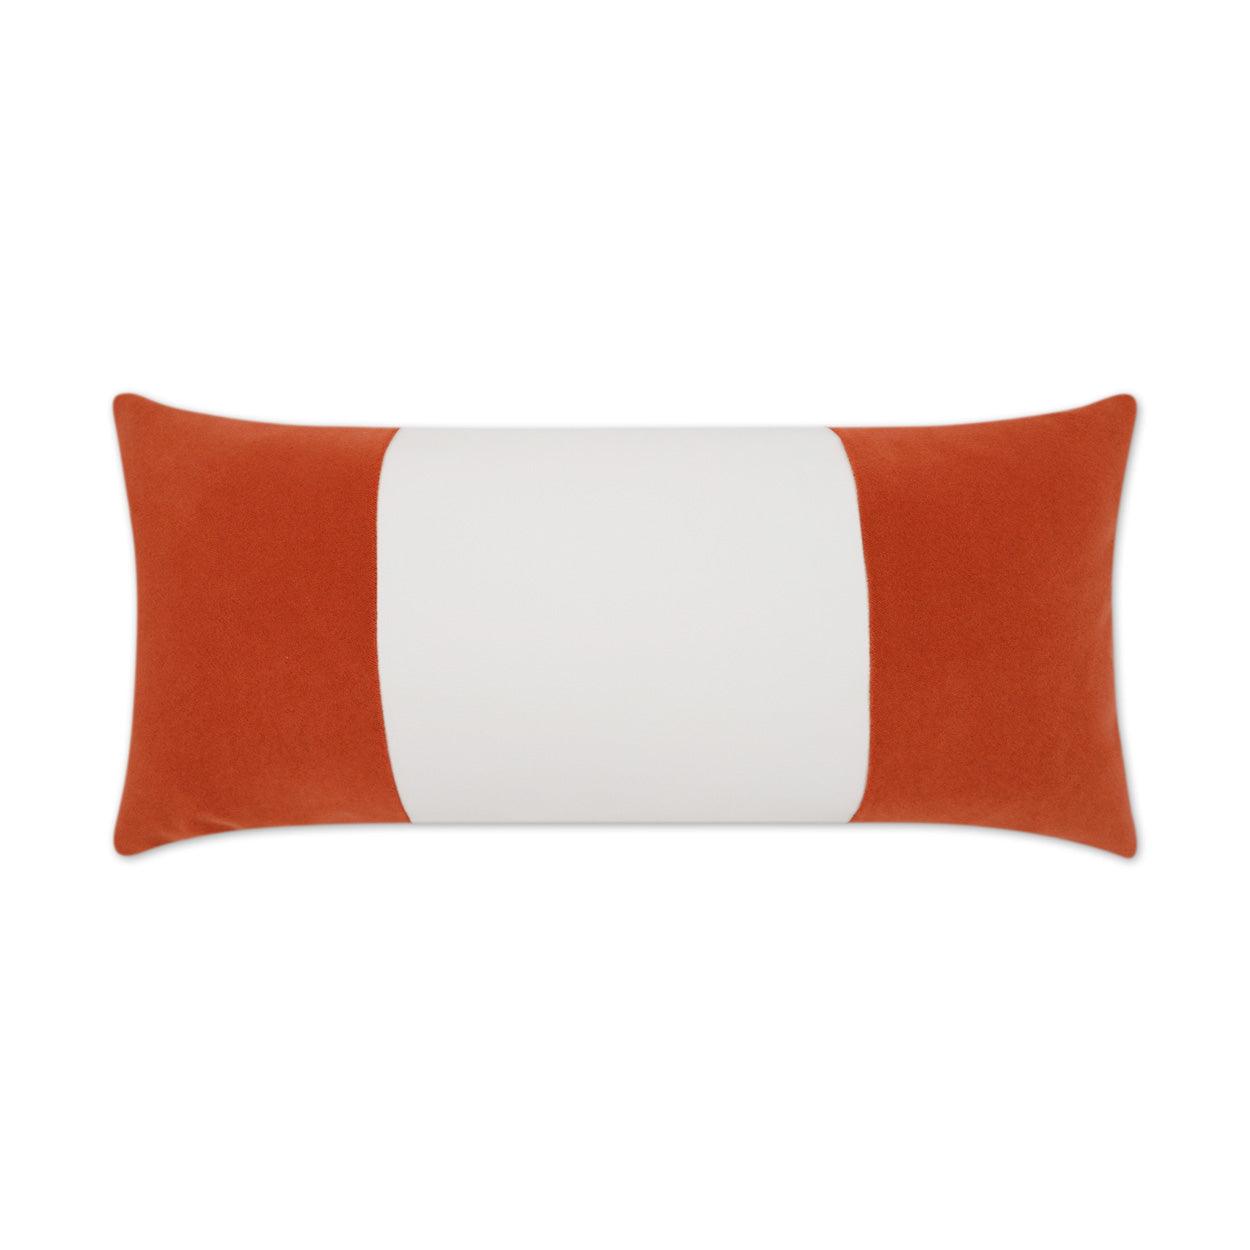 LOOMLAN Outdoor - Outdoor Sundance Band Lumbar Pillow - Orange - Outdoor Pillows